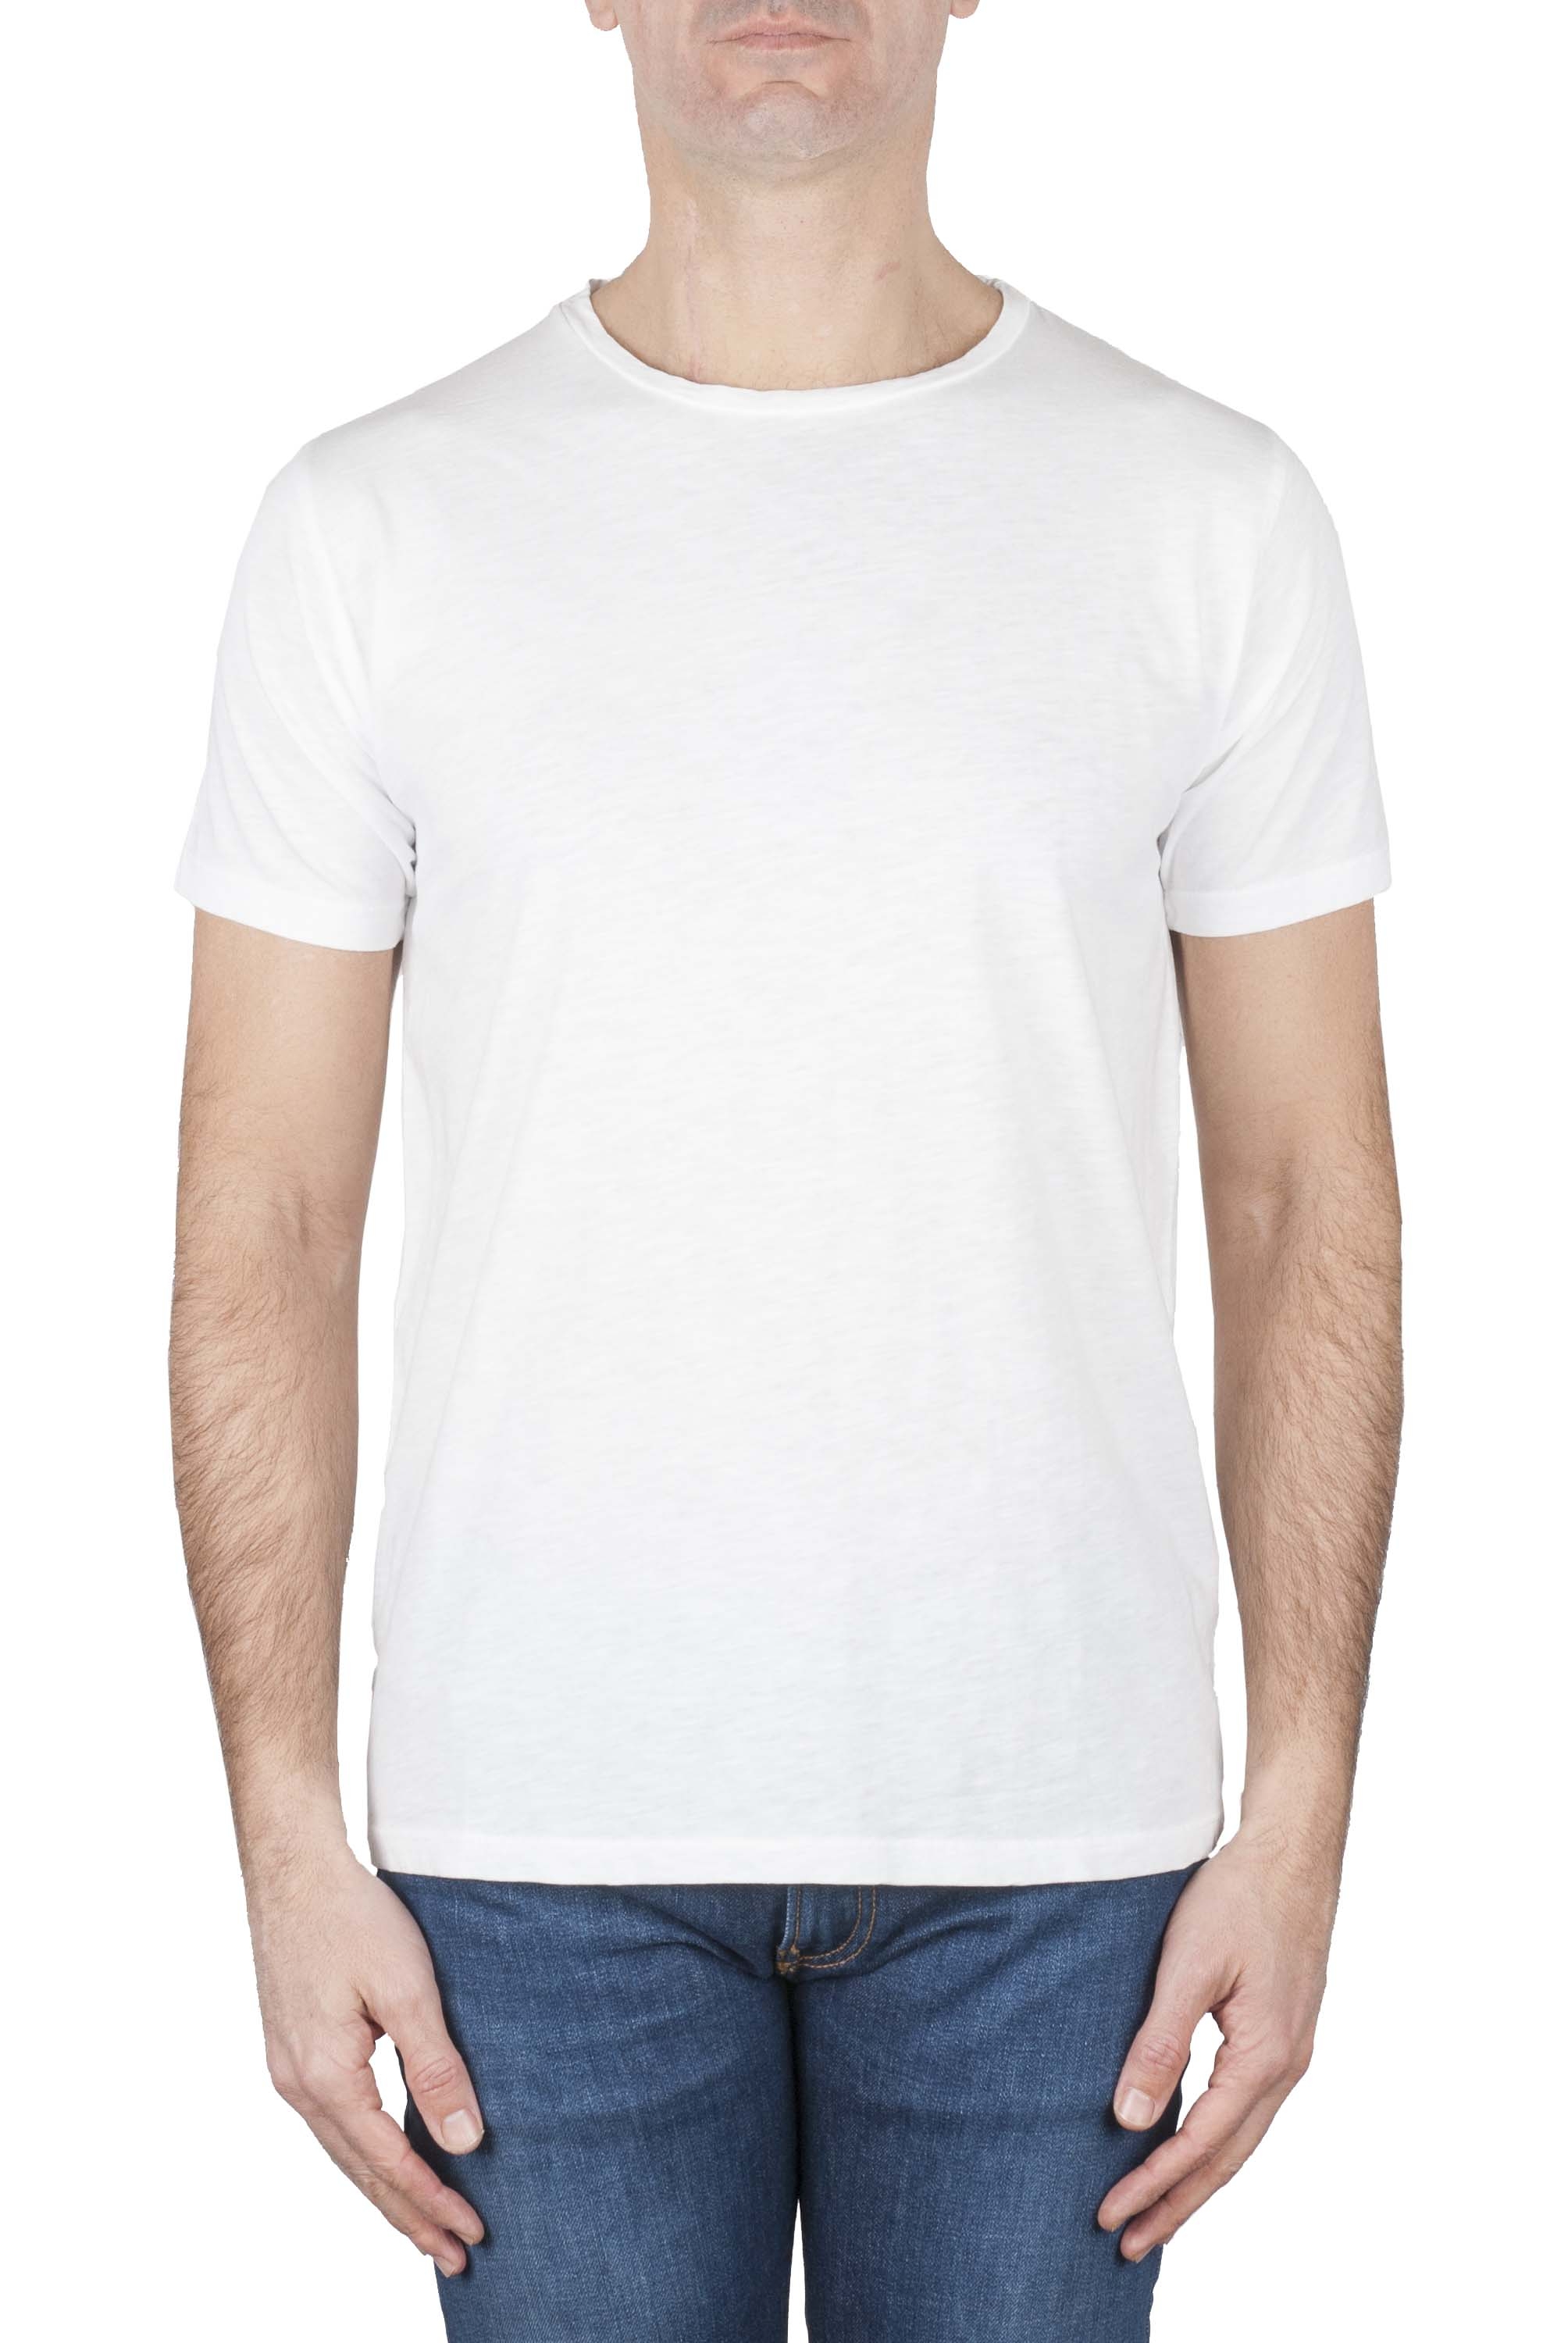 SBU 01637_19AW Camiseta de algodón con cuello redondo en color blanca 01